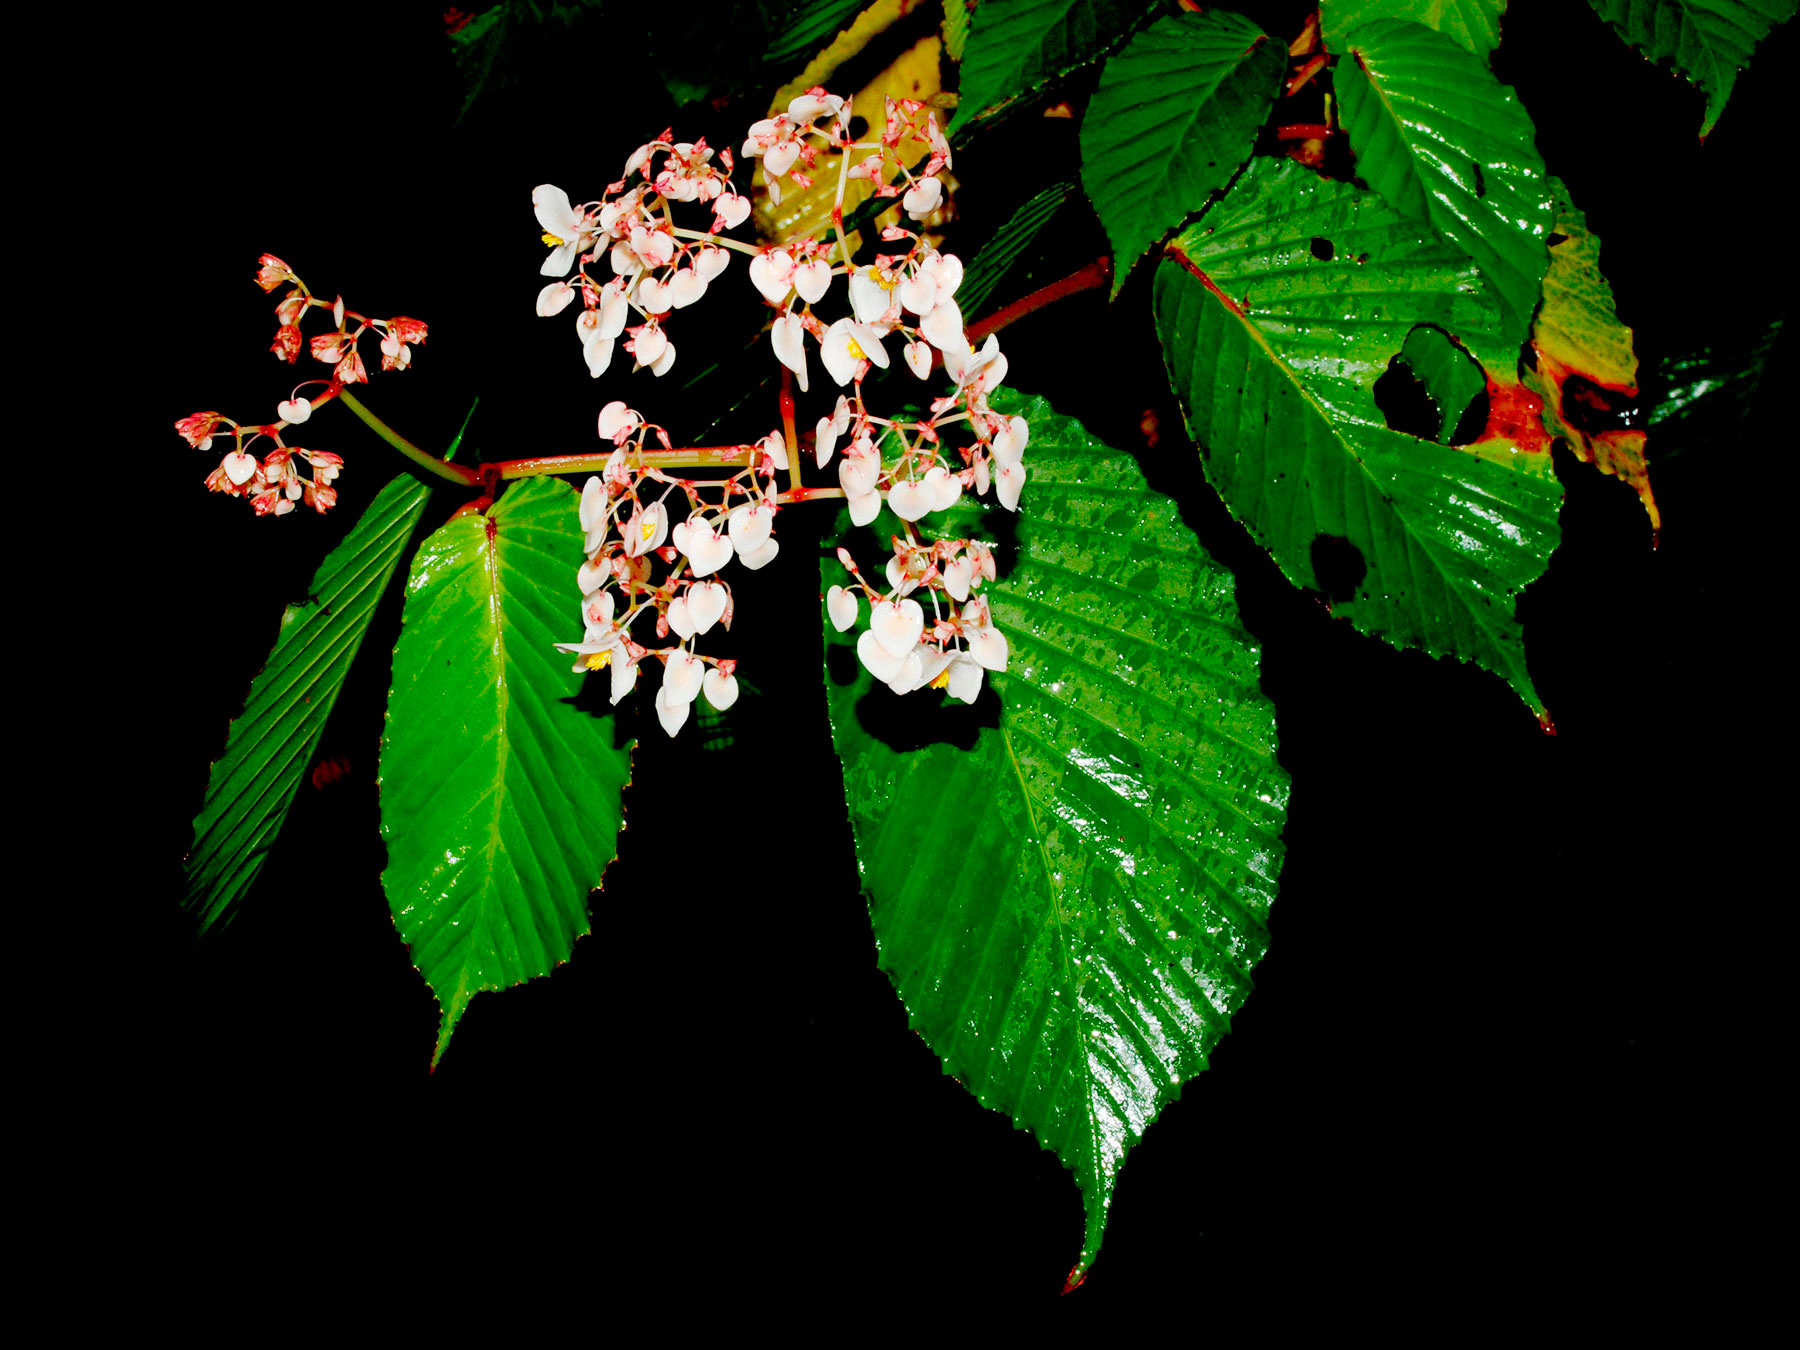 Begonia cooperi, especie endémica de Costa Rica y Oeste de Panamá